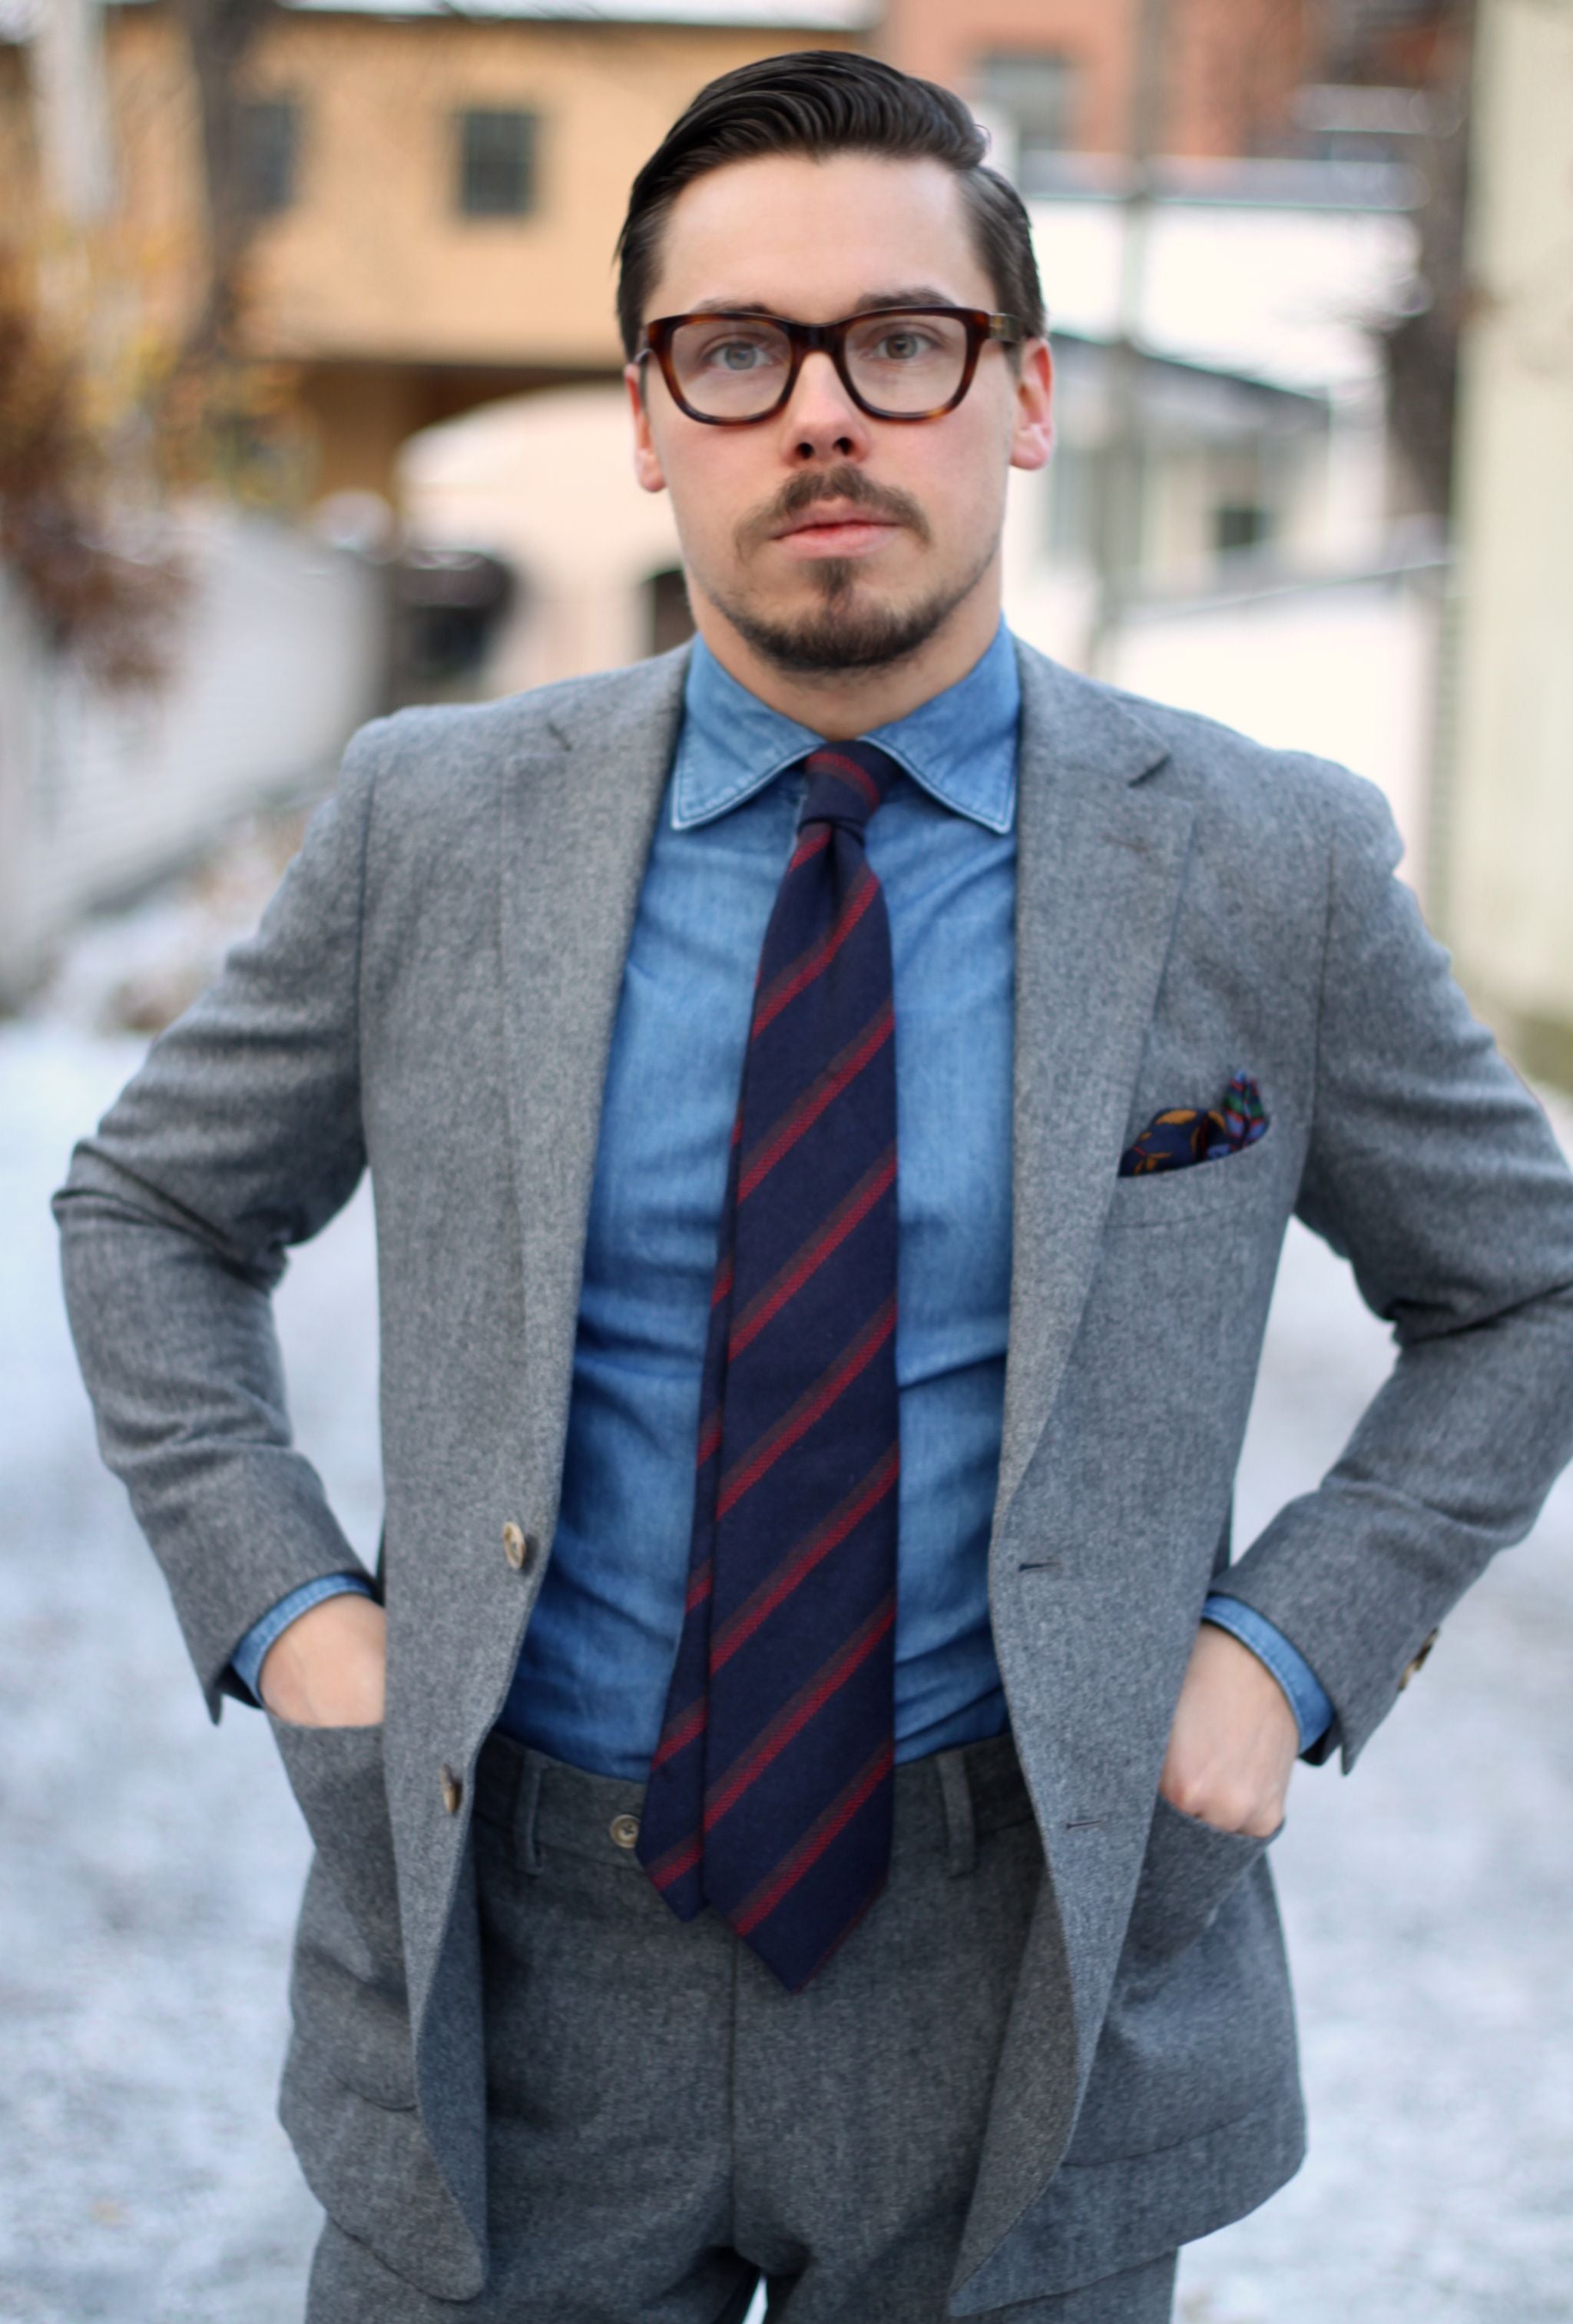 Flannel suit with denim shirt - business casual - DressLikeA.com ...